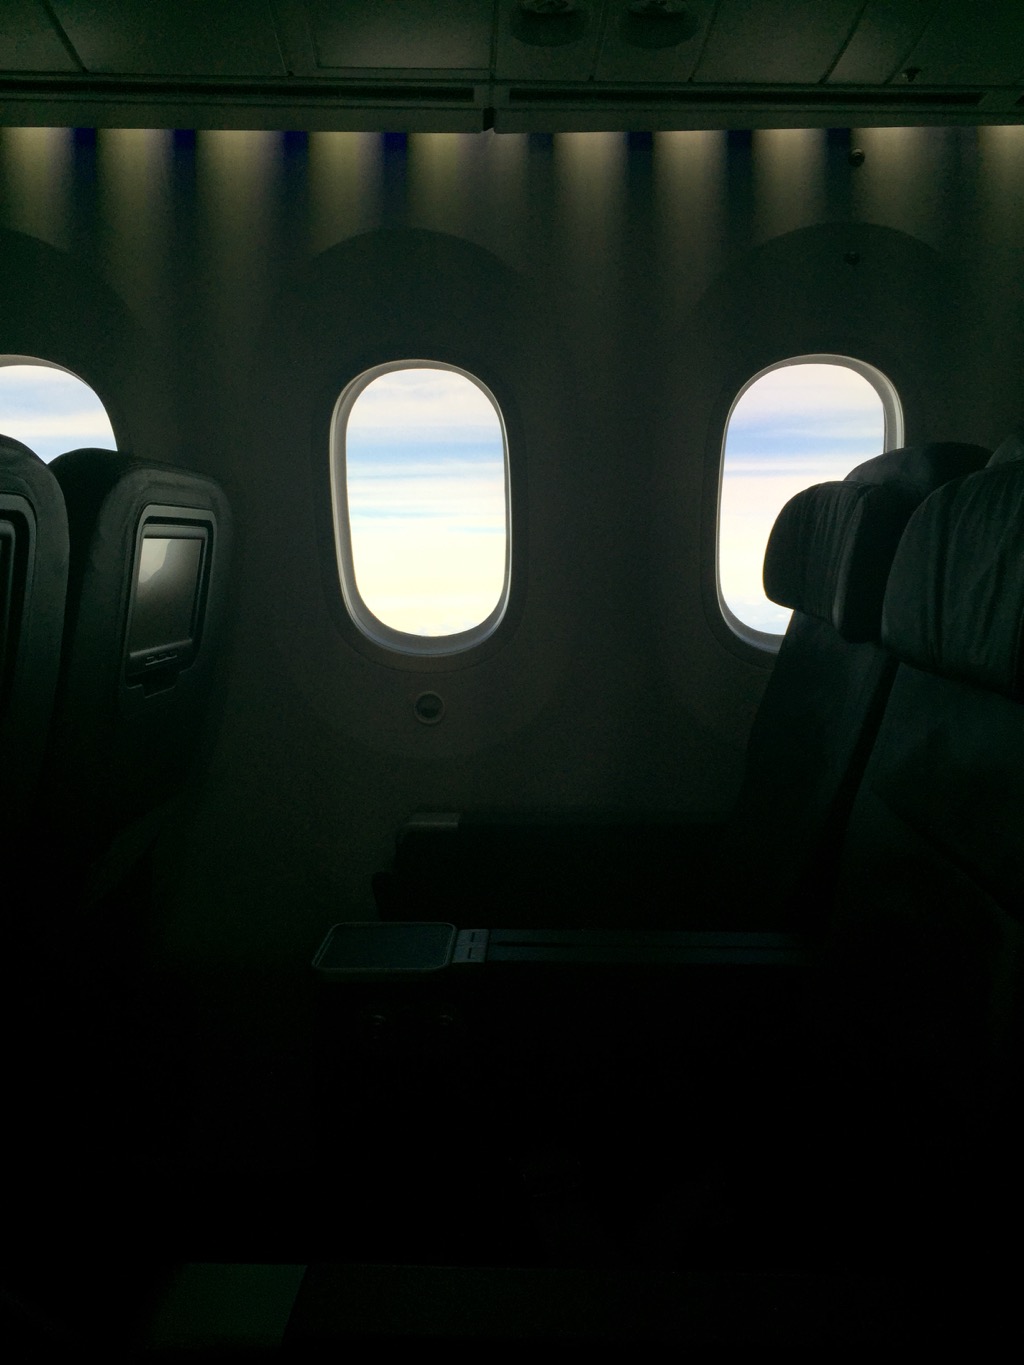 Jetstar 787 StarClass - Business Class Legroom